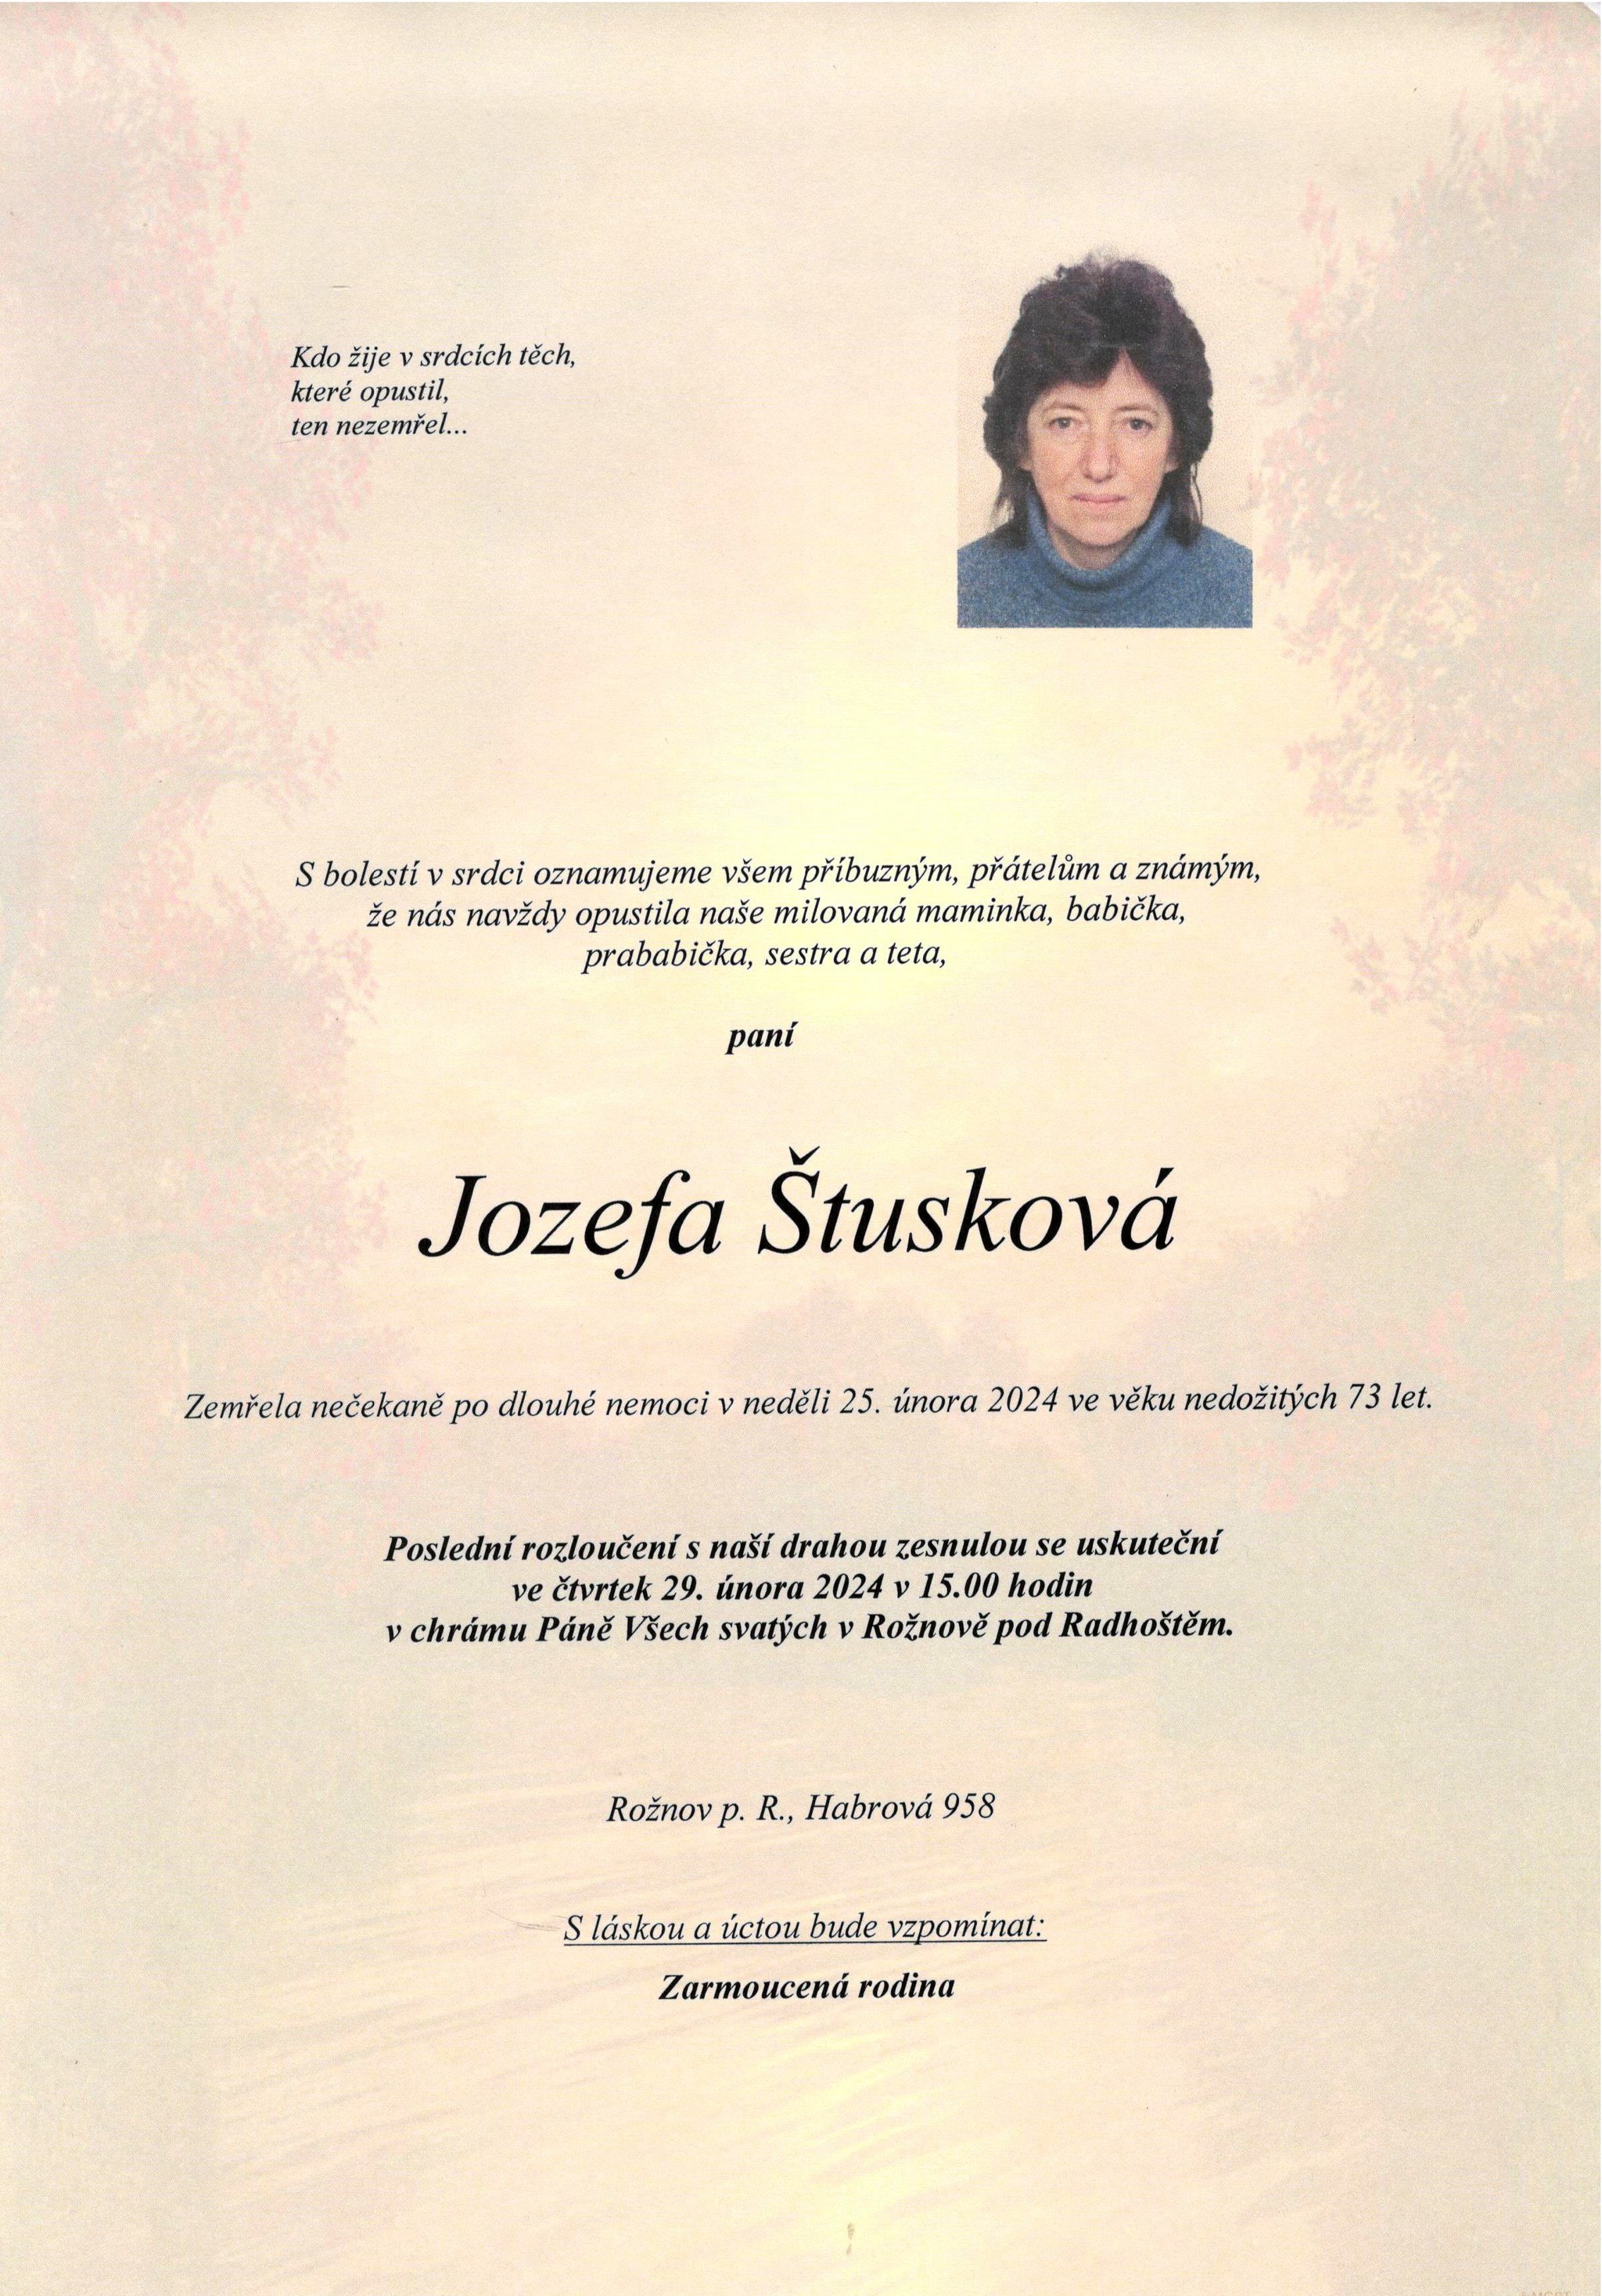 Jozefa Štusková